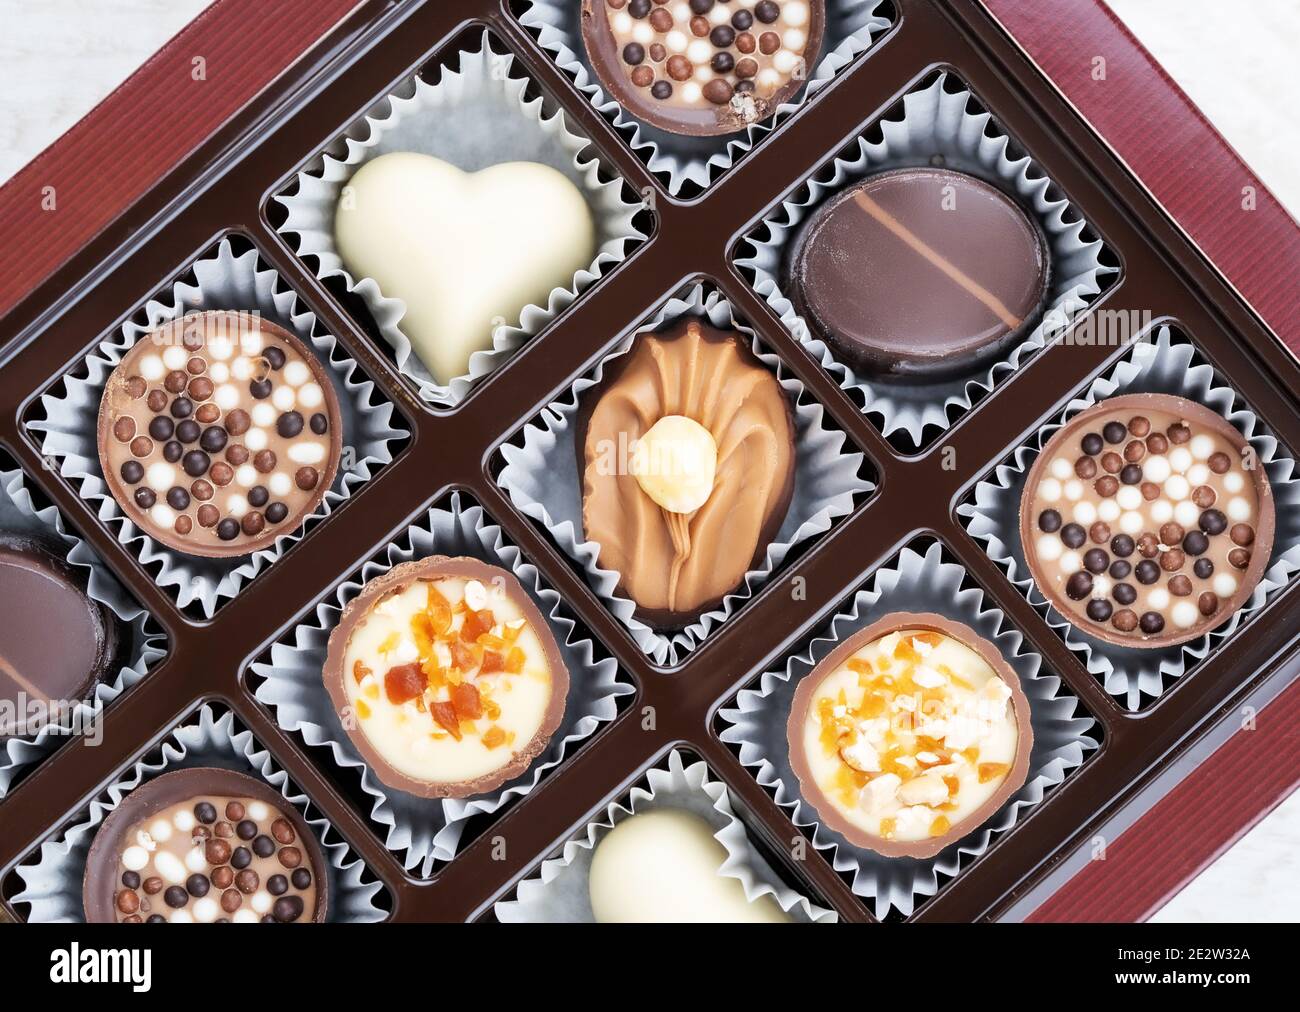 Différentes pralines au chocolat. Boîte de pralines belges de différentes formes. Assortiment de chocolats fins belges blancs, noirs et au lait Banque D'Images